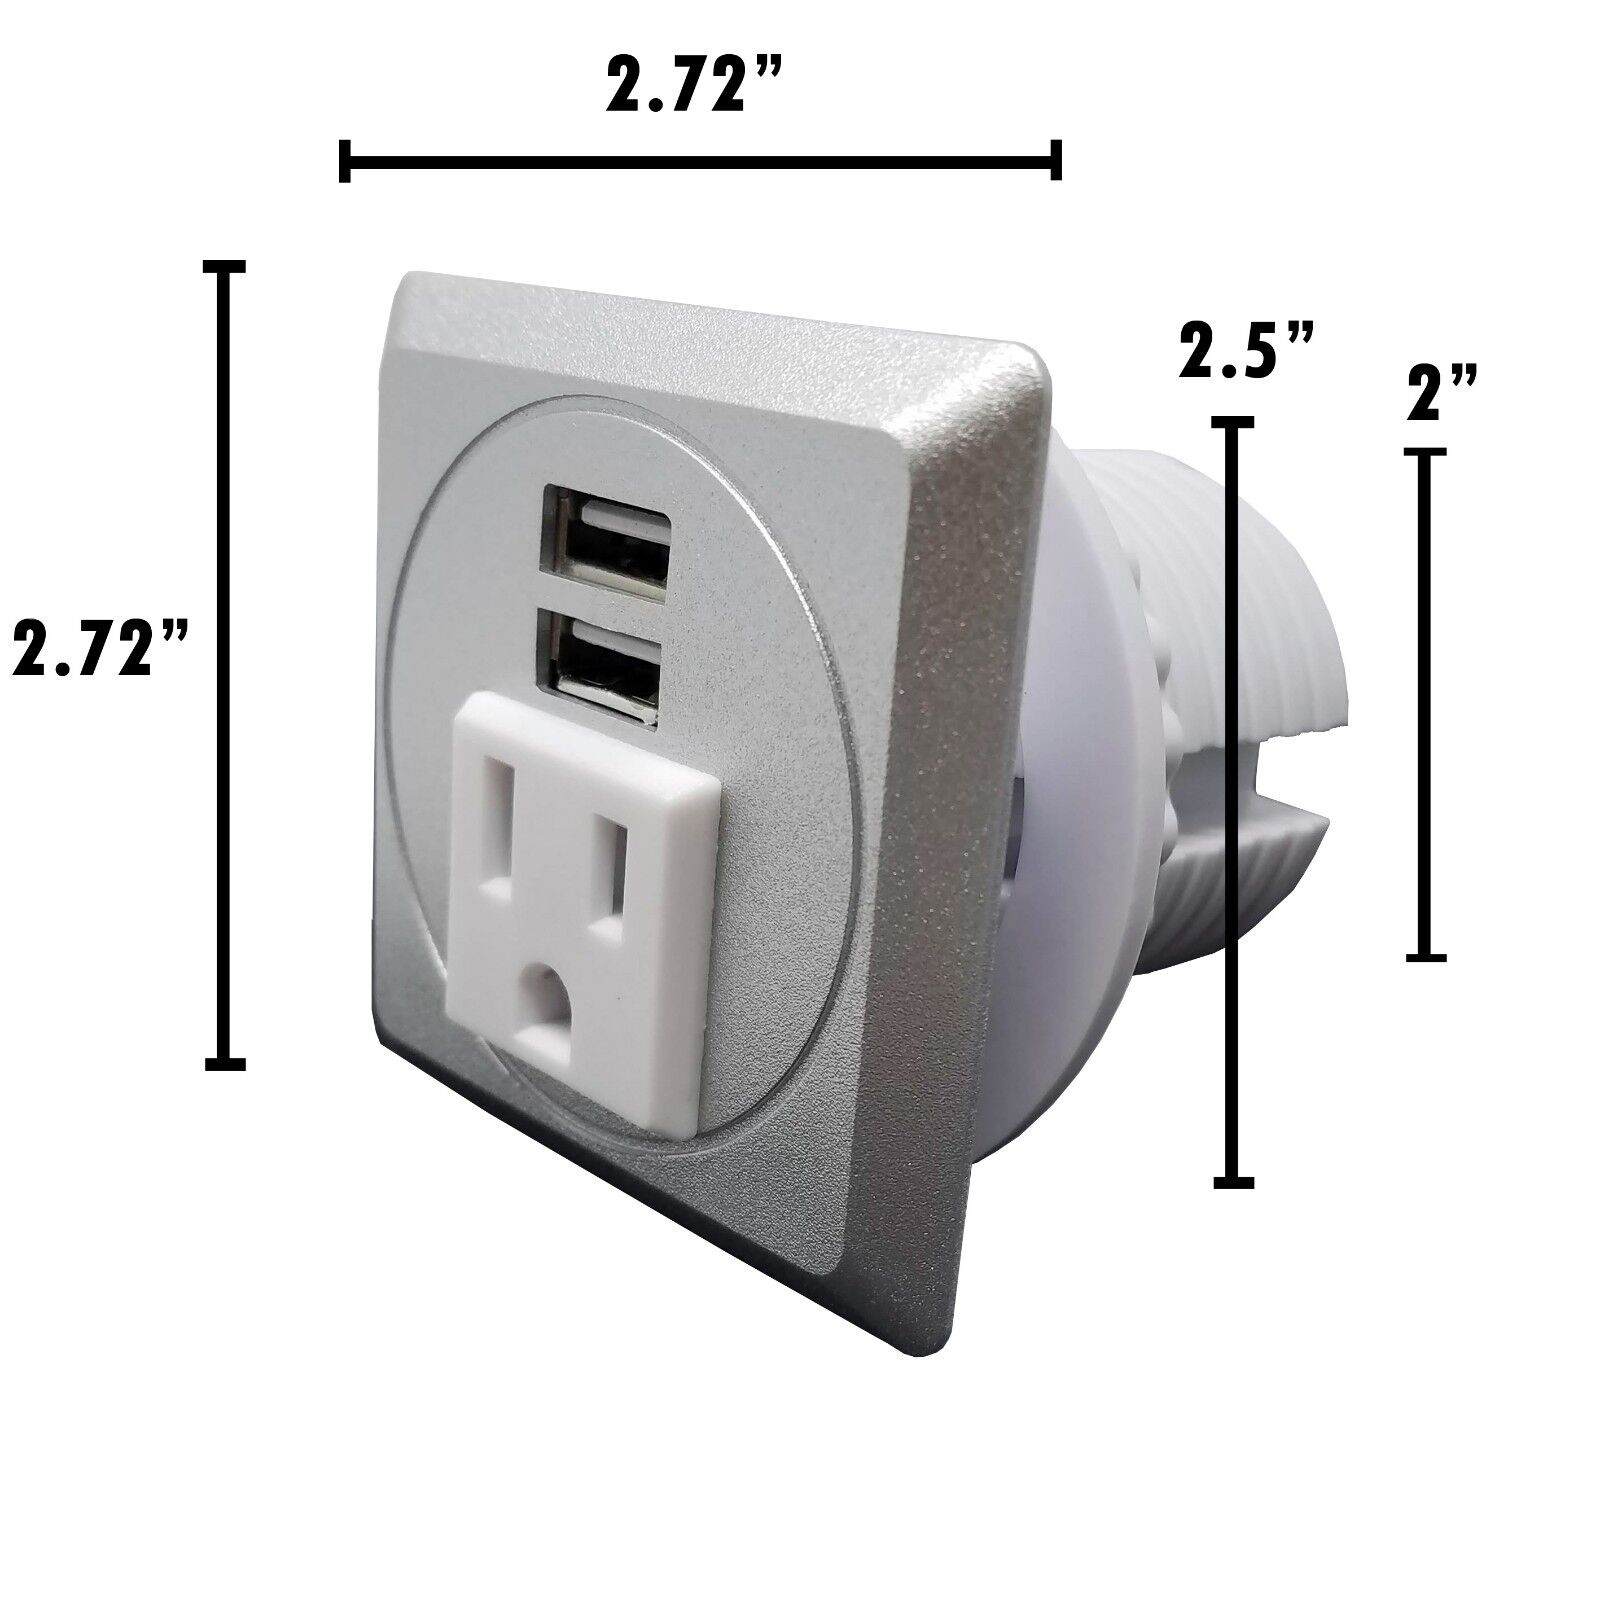 Desktop Power Grommet W/ 2 USB Charging Ports 1 AC Outlet-Fit 2\